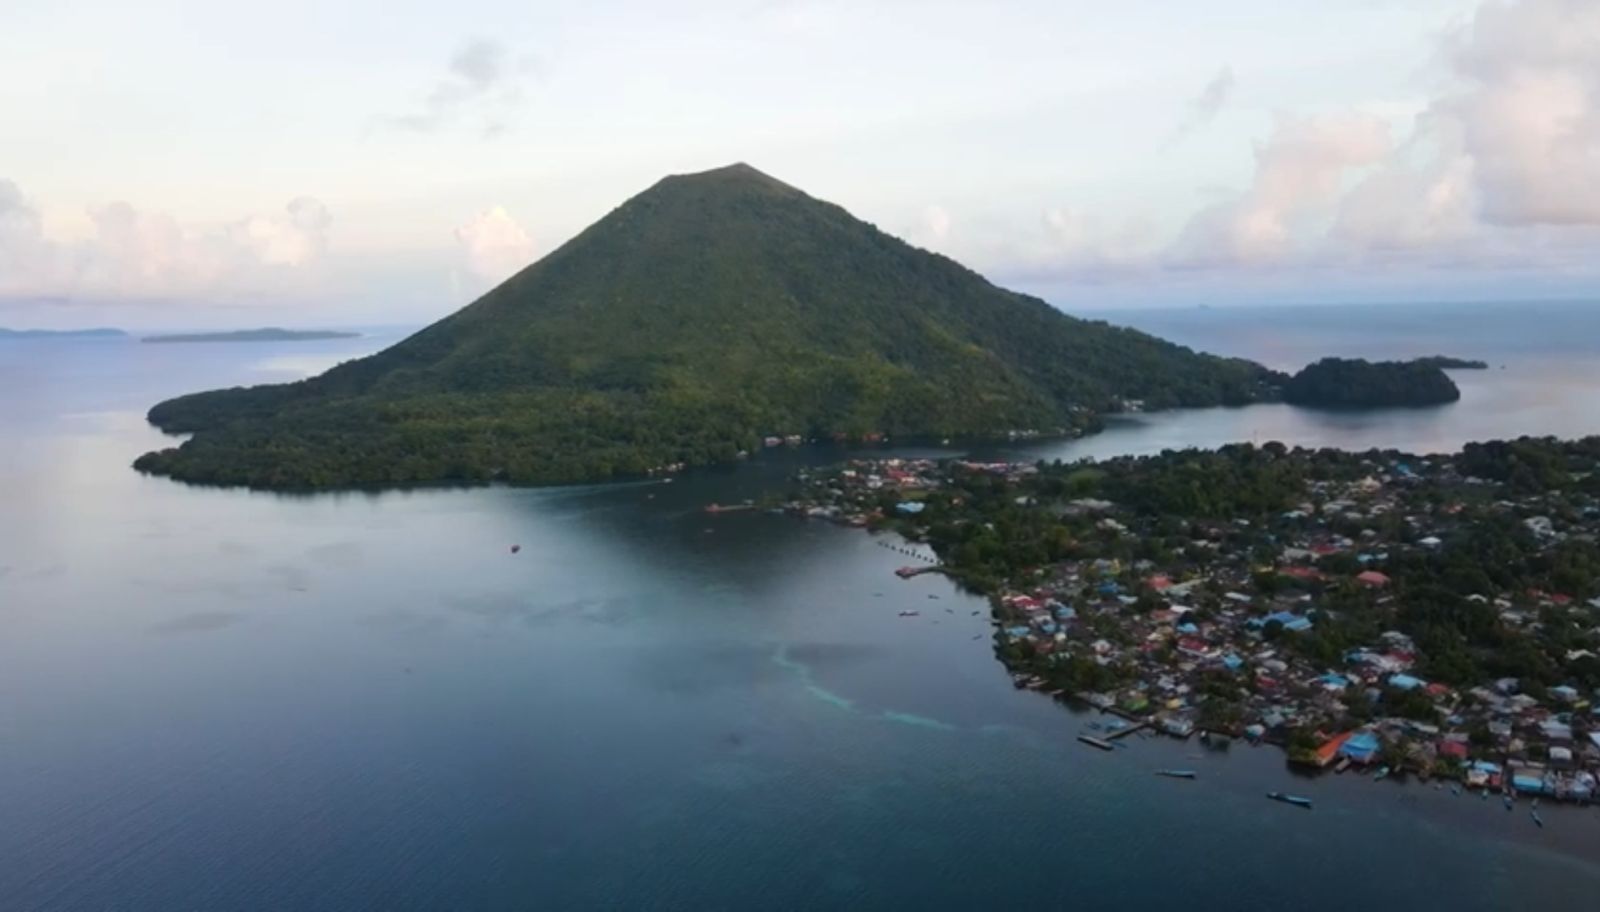 Menelusuri Keindahan Alam dan Sejarah Budaya di Wisata Banda Neira, Maluku Tengah